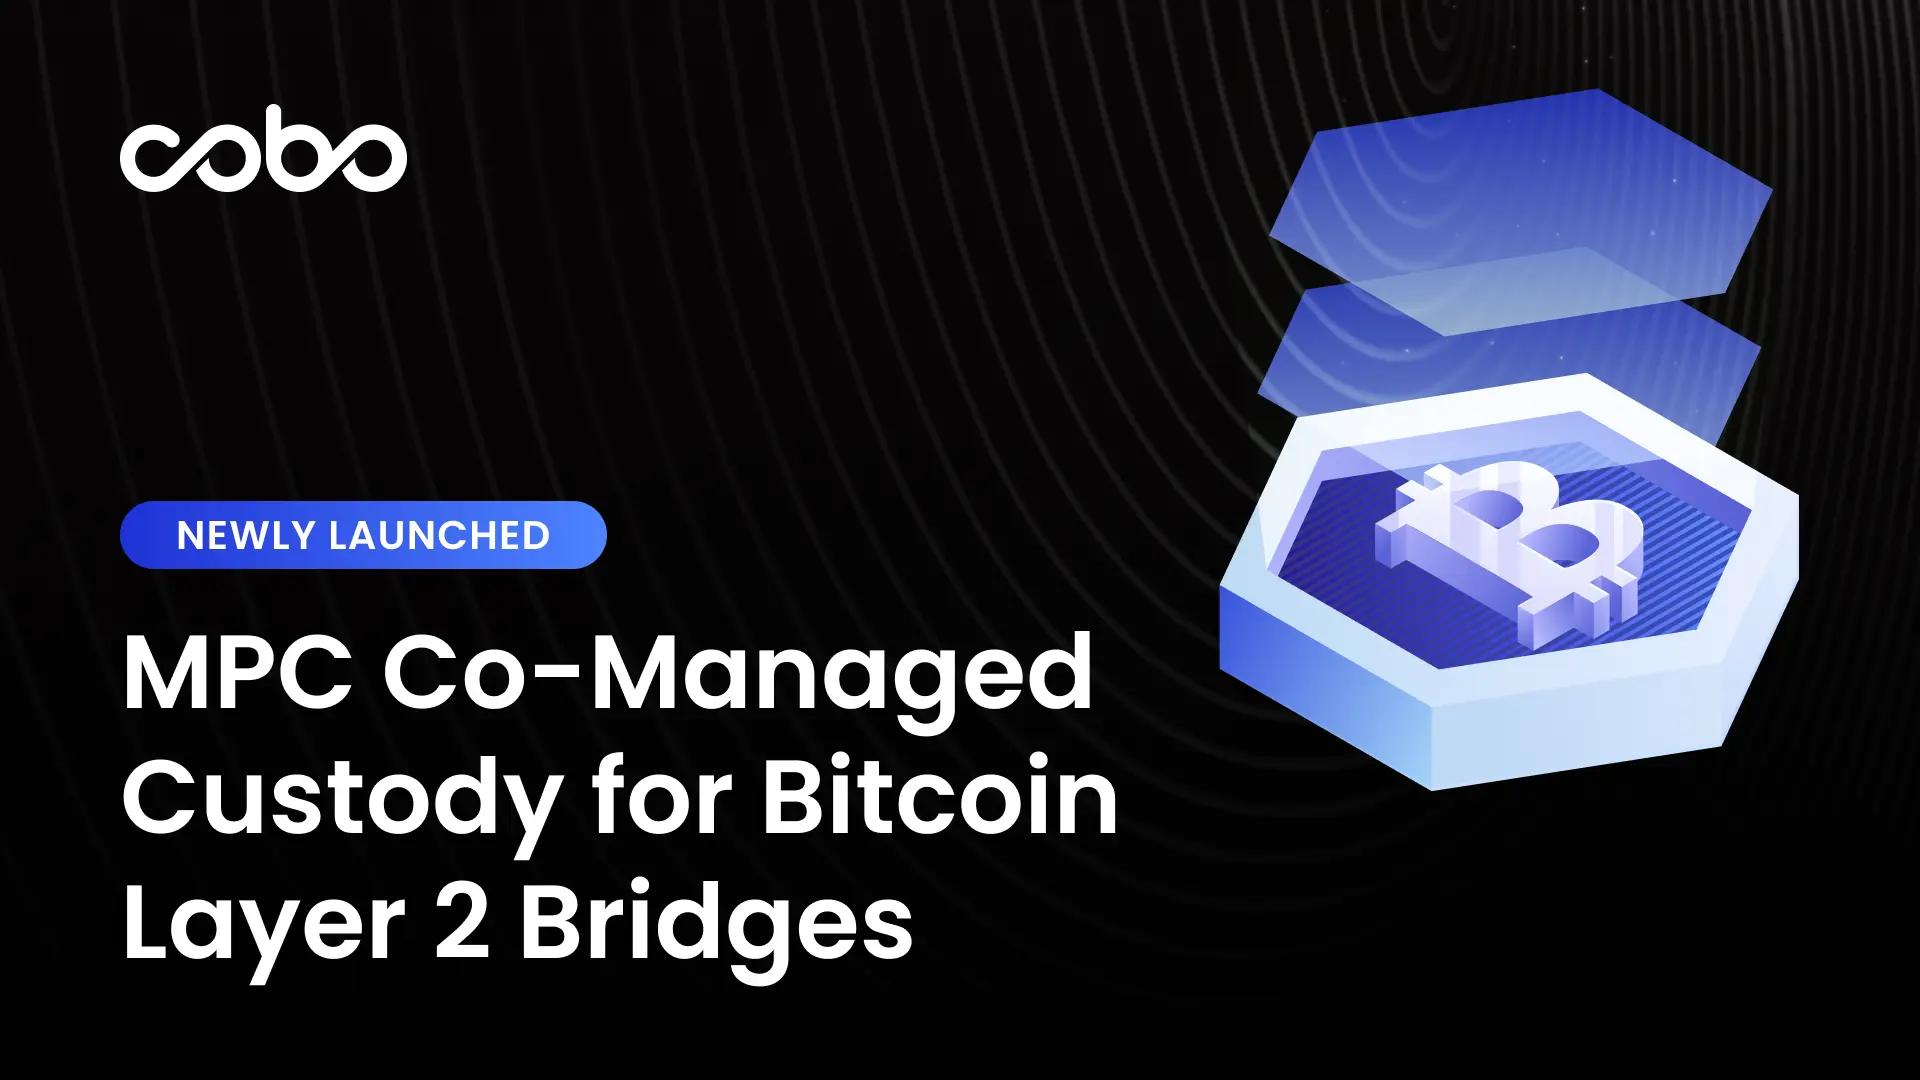 Cobo 推出比特币二层网络桥 MPC 协管方案